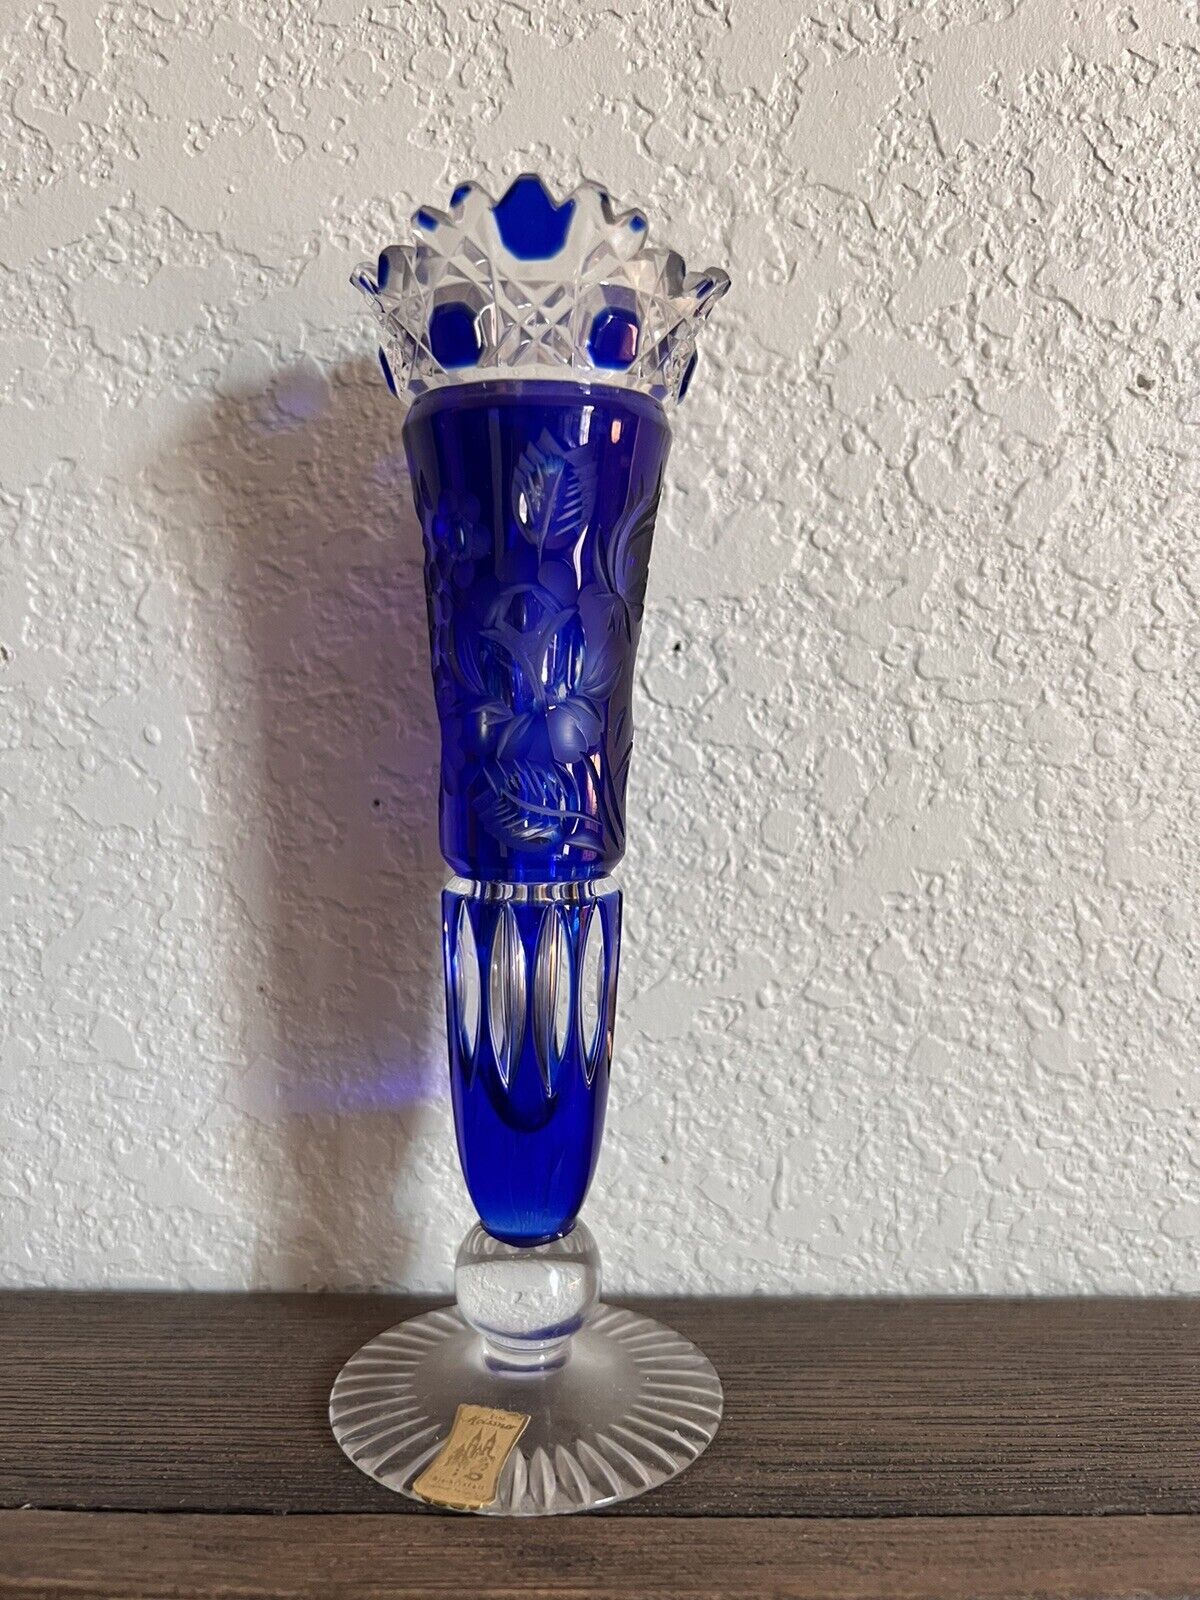 Meissener Bleikristall Echt Cobalt Blue Crystal Vase: Floral Etching